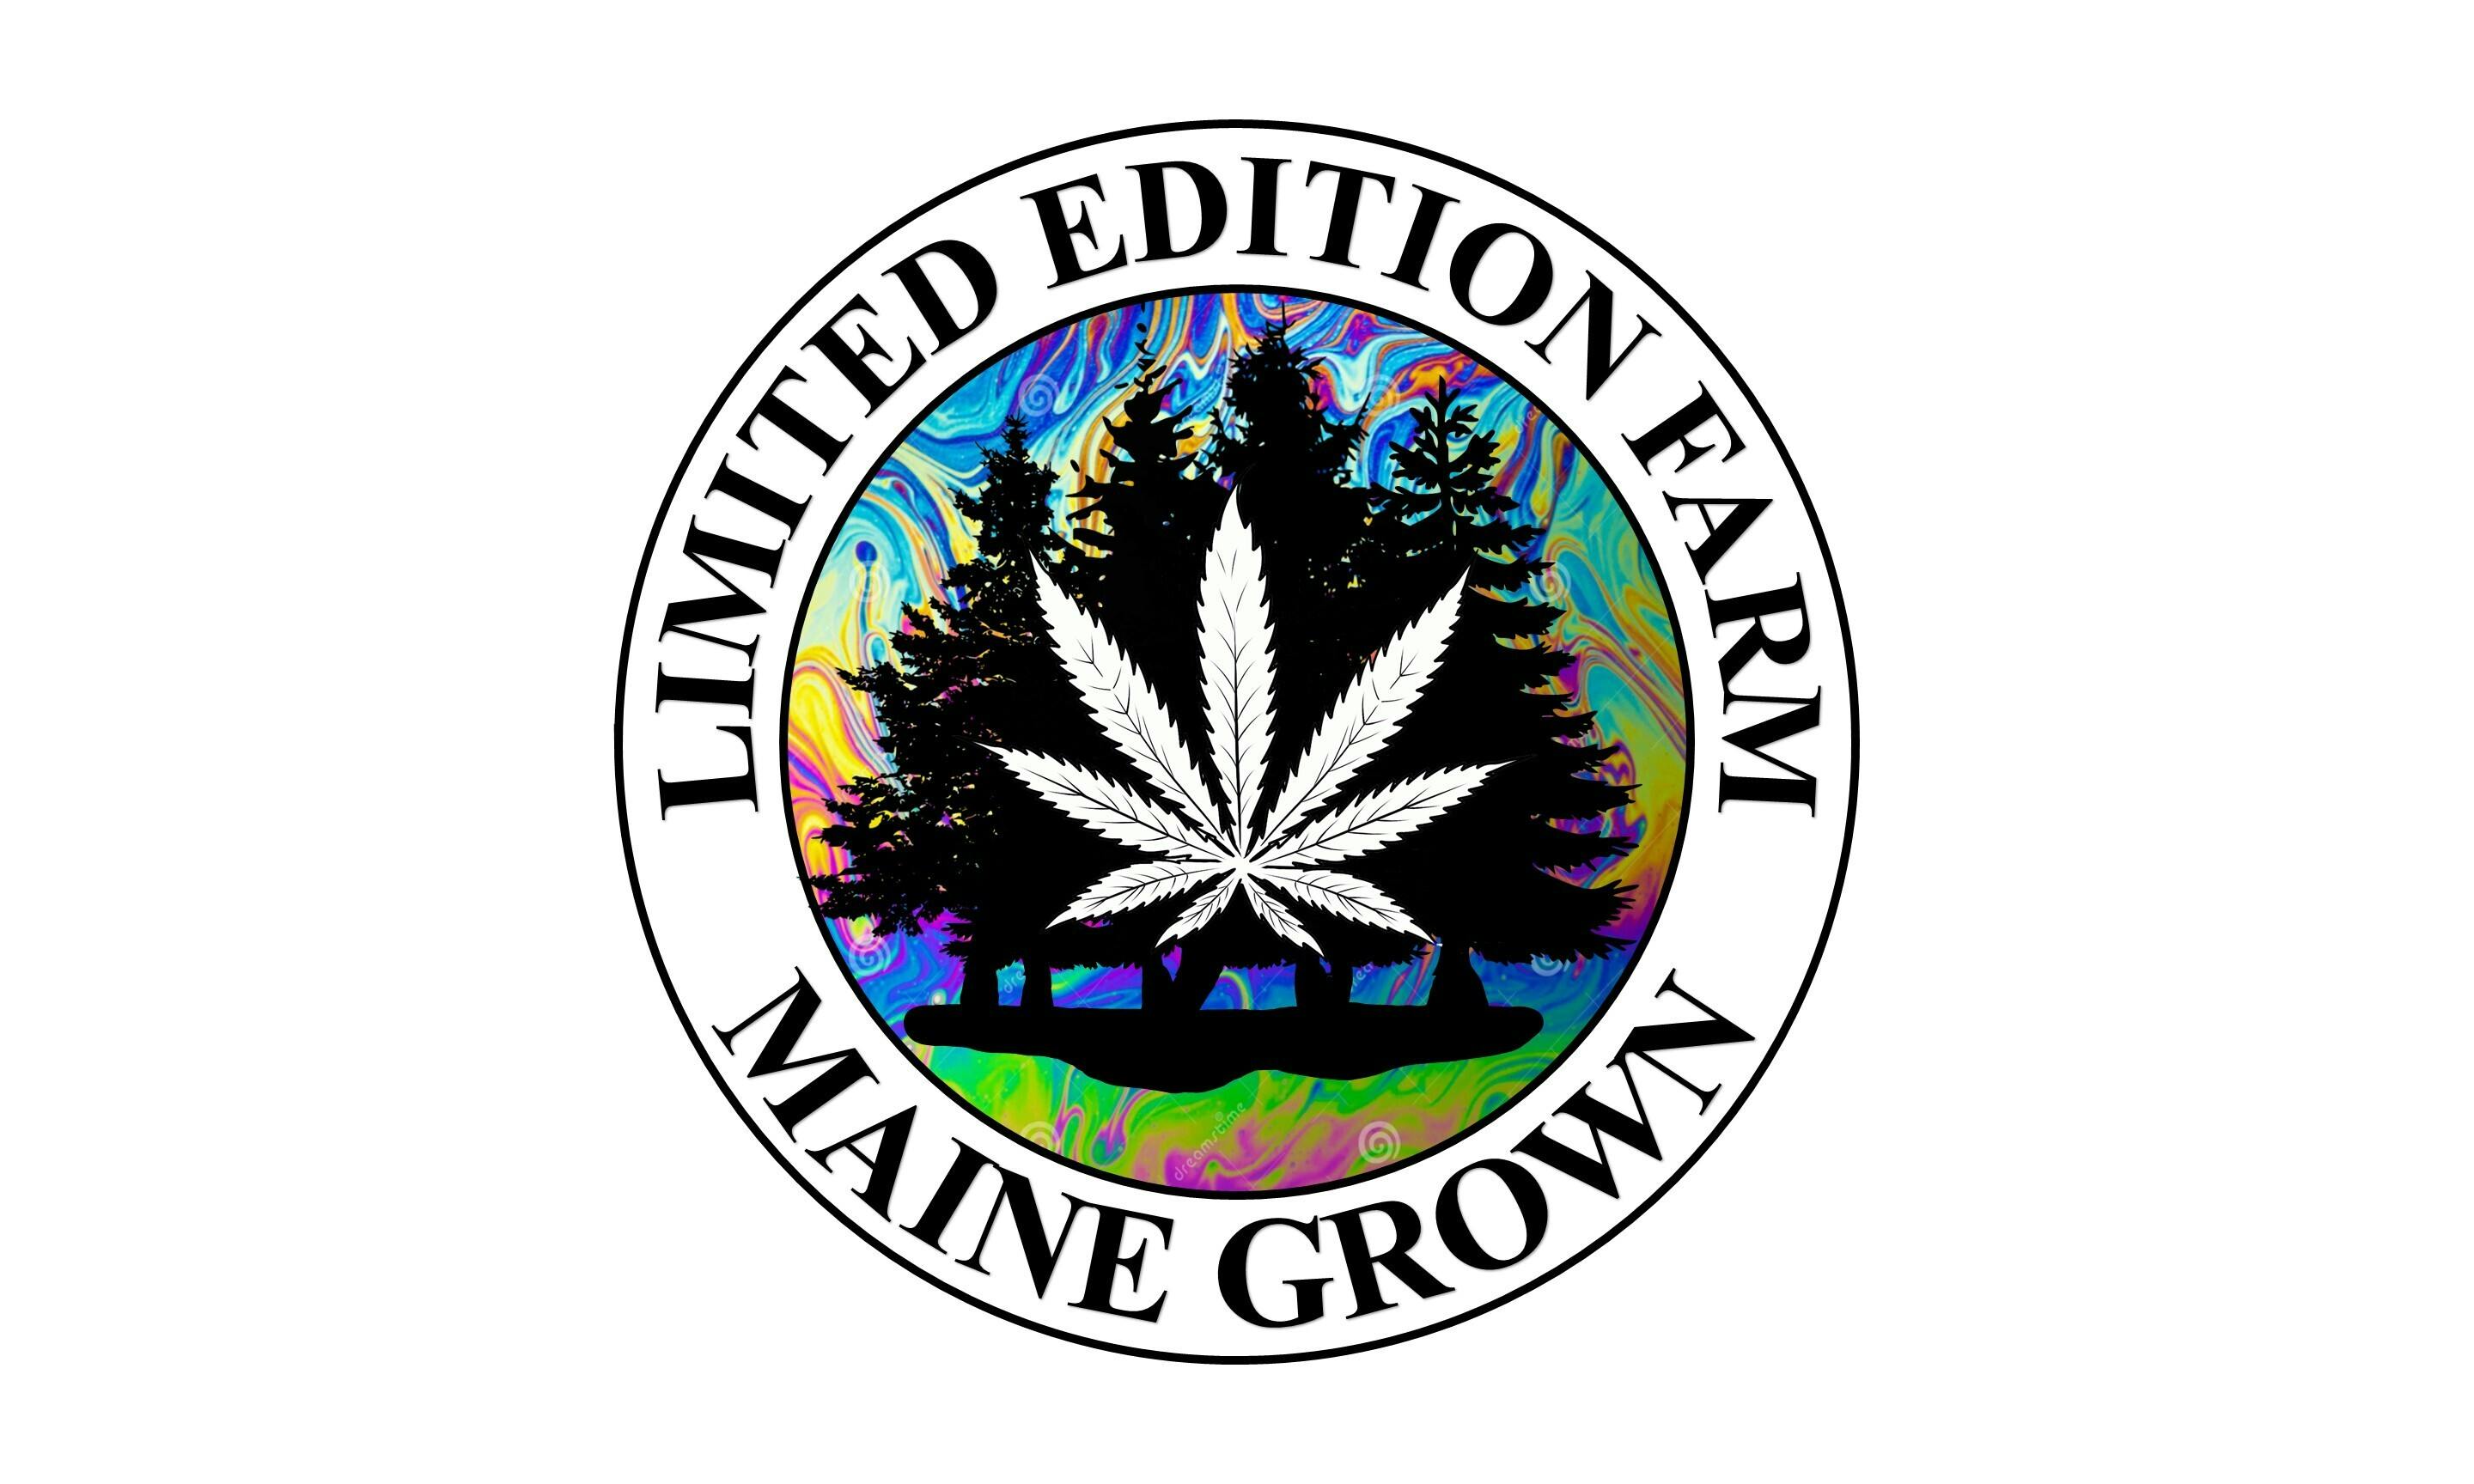 Limited Edition Farm LLC - Cultivation Center logo